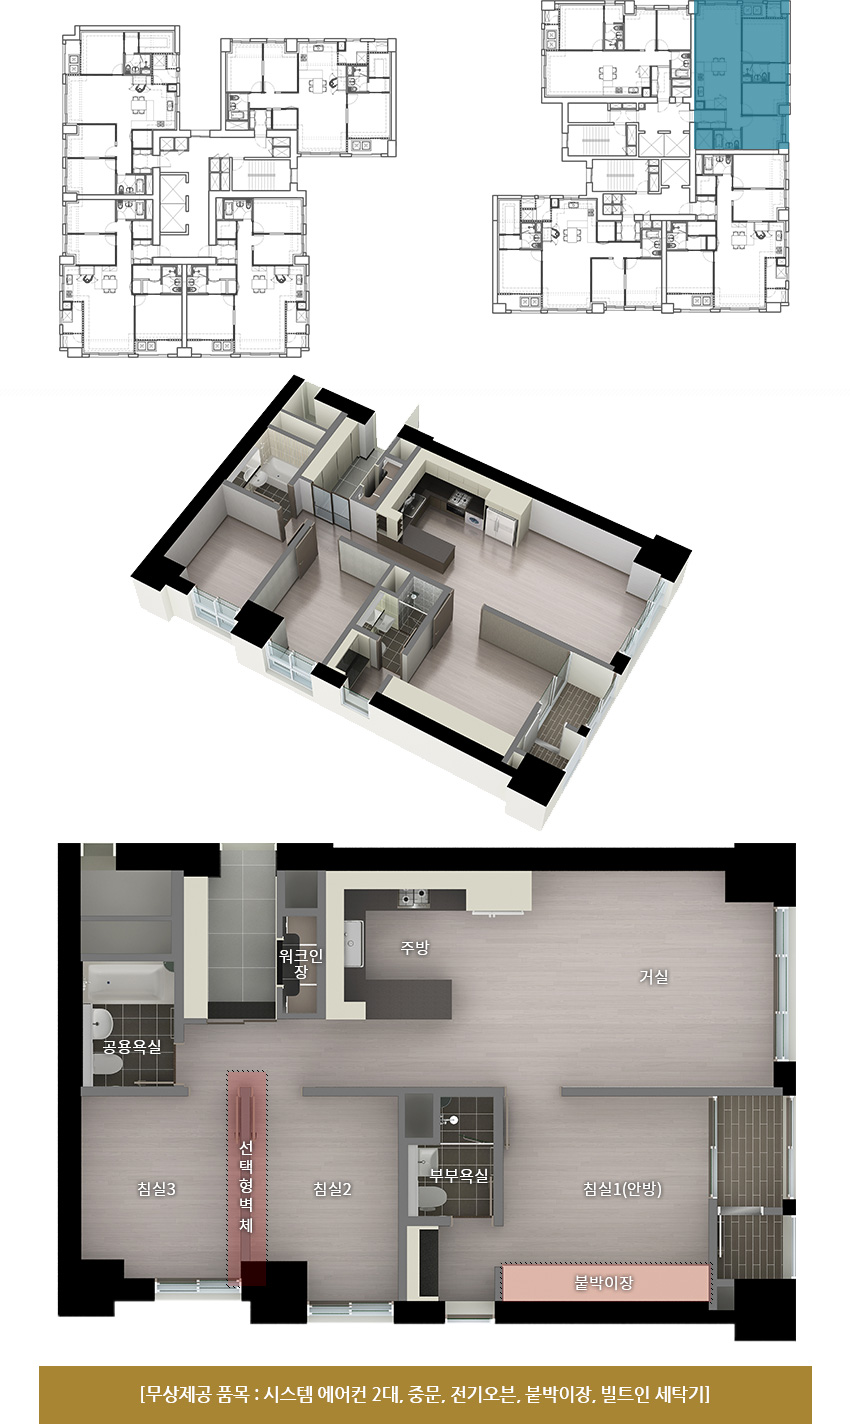 단지 내 84D형 위치 표시와 내부 설계 도면(실외기실, 발코니, 사장실, 탕비실, 화장실2, 회의실1, 회의실2, 사무실, 주방/식당, 현관, 화장실1)